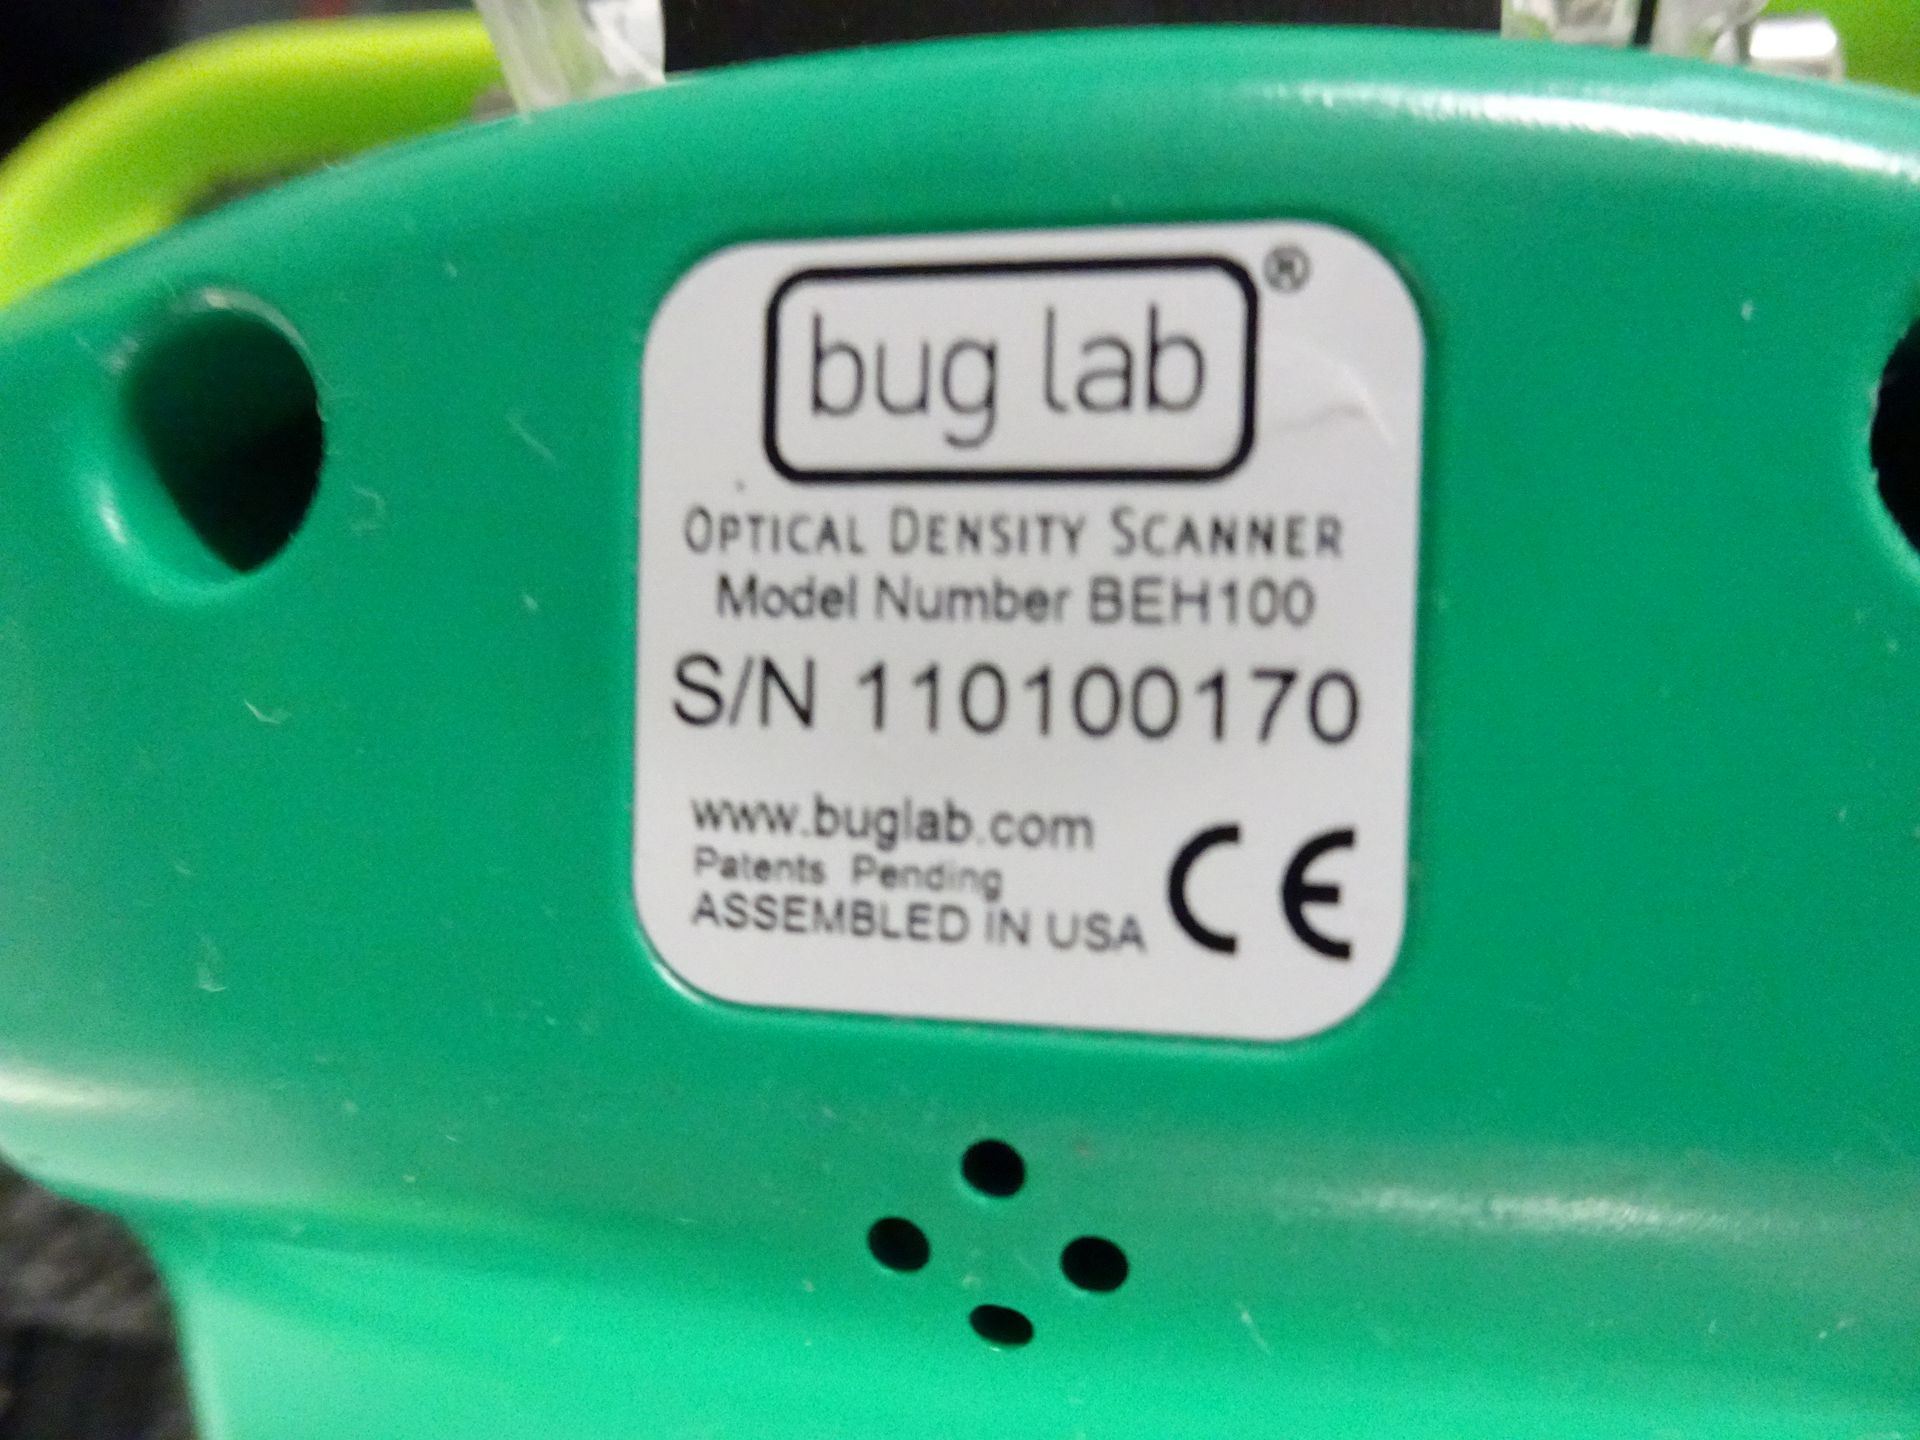 Bug Lab OD Scanner - Image 4 of 7